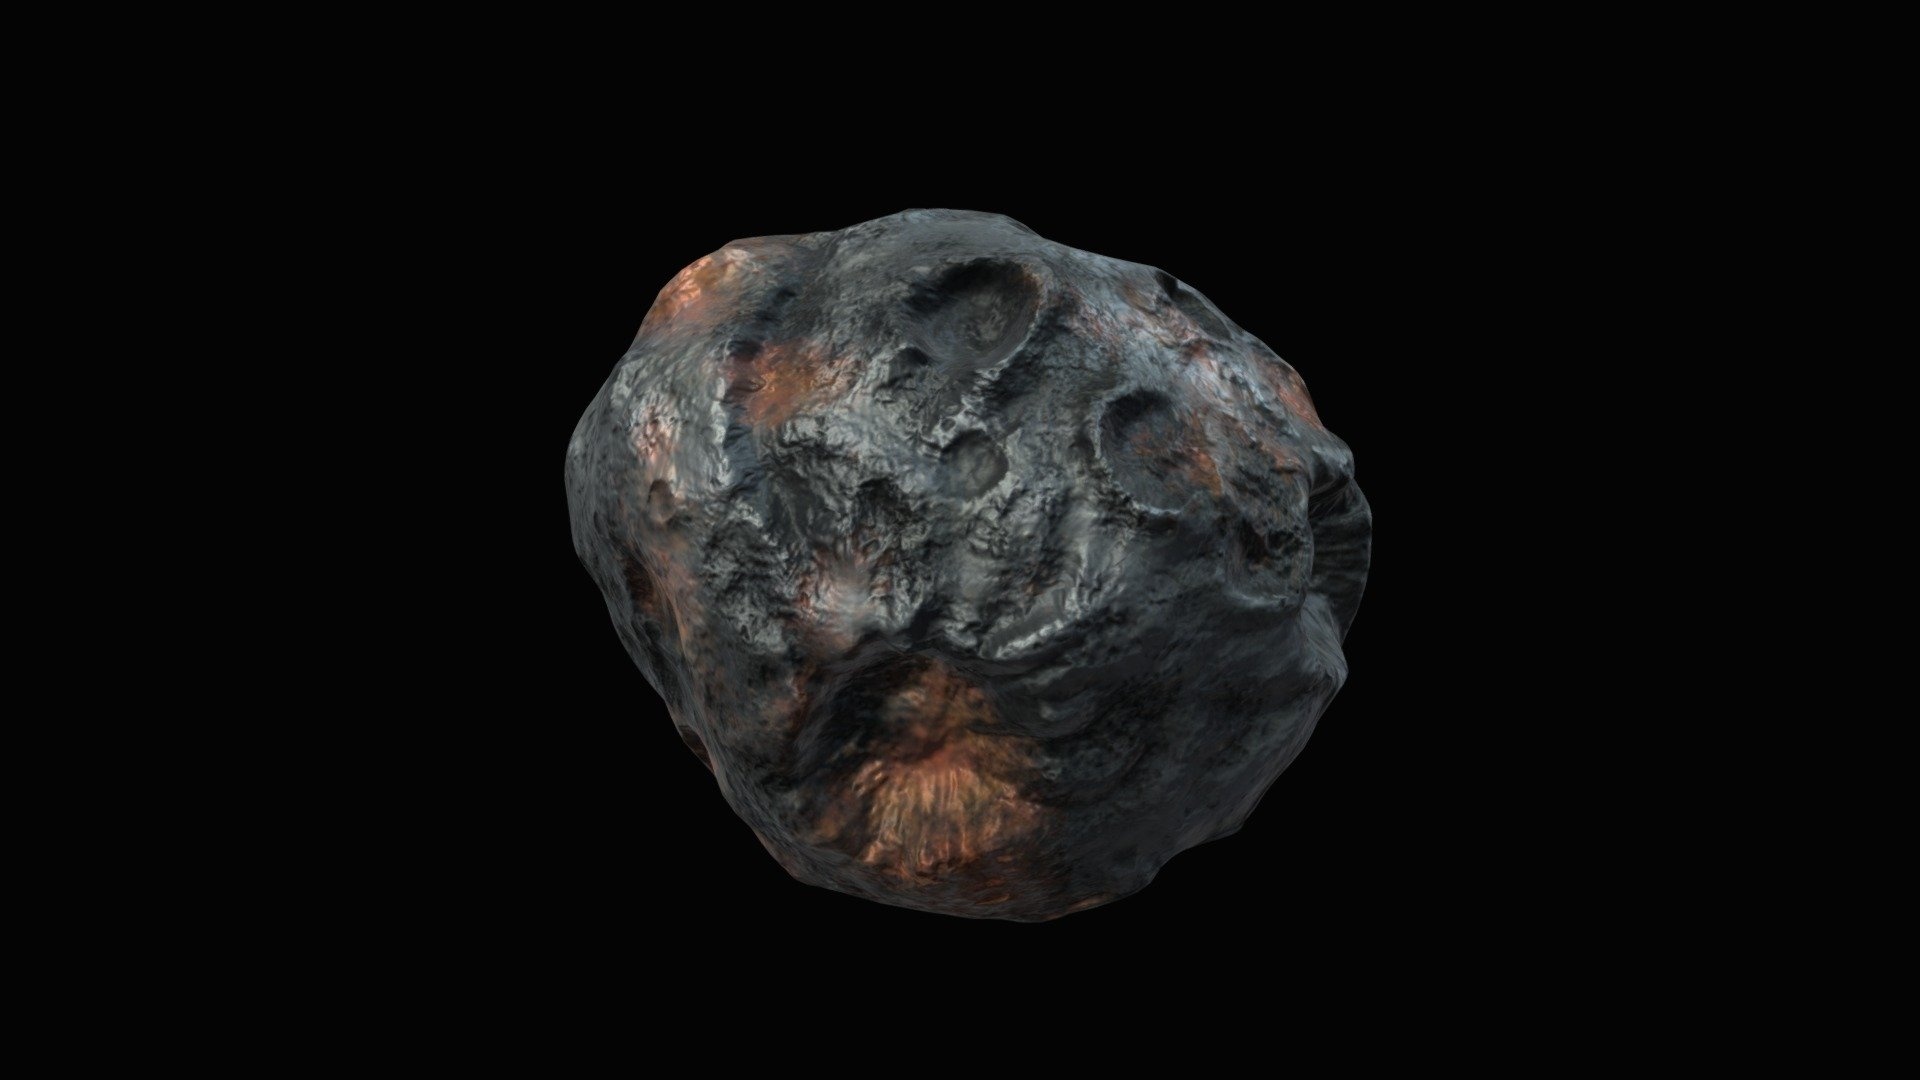 Psyche asteroid, 3D model, Tashtego, Astronomical wonder, 1920x1080 Full HD Desktop